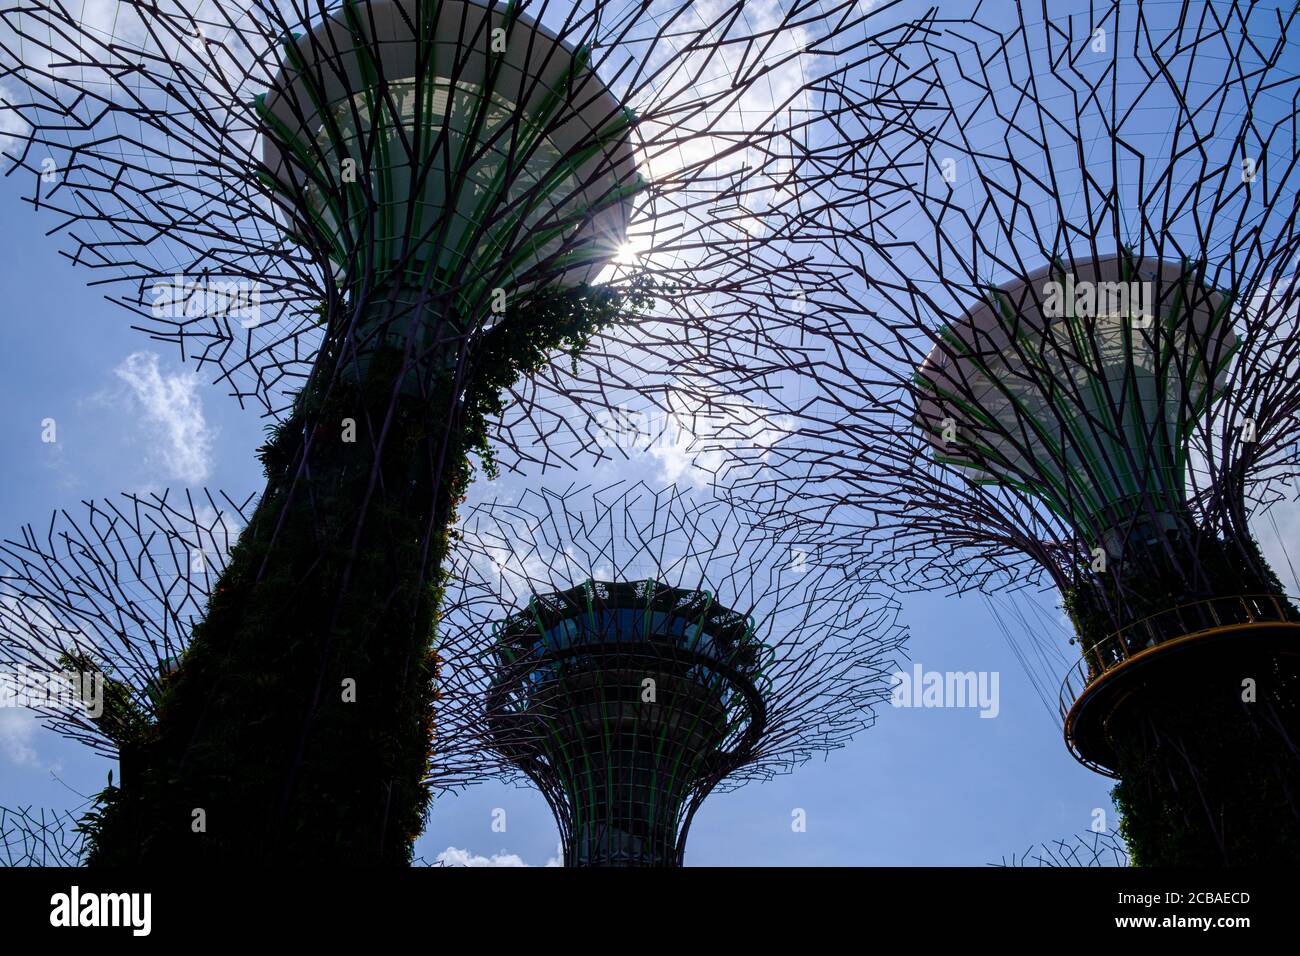 Die baumarchigen Strukturen von Supertree Grove wurden gegen die Sonne, Gardens by the Bay, Singapur, geschildet Stockfoto